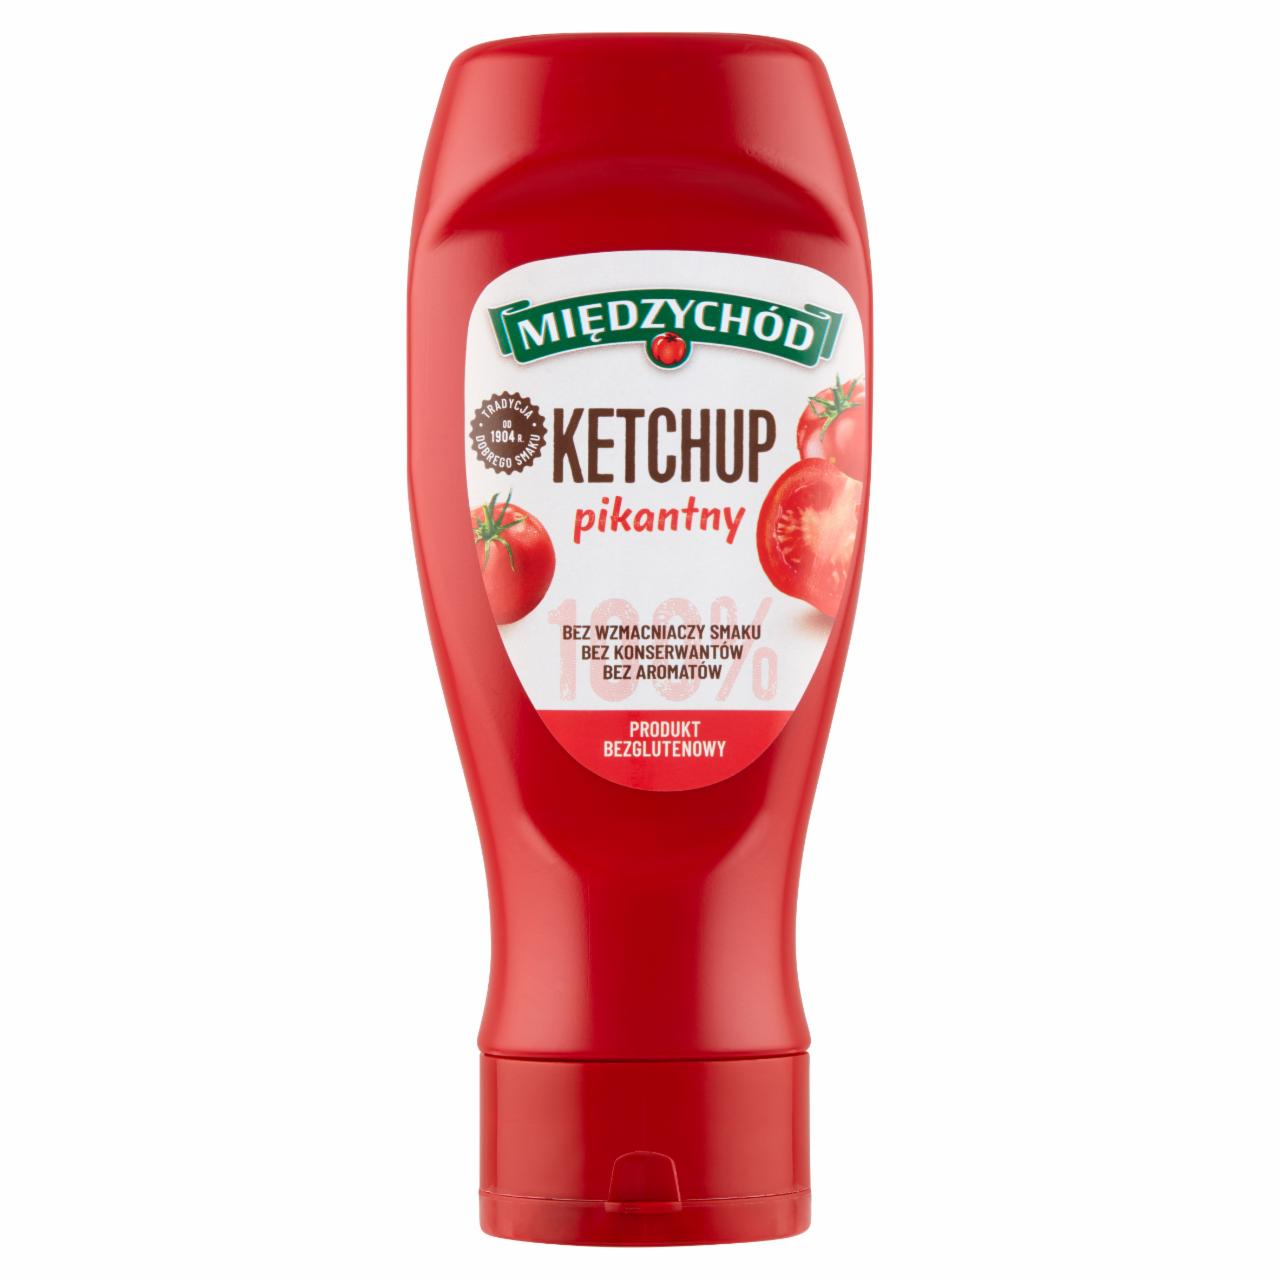 Zdjęcia - Międzychód Ketchup pikantny 430 g